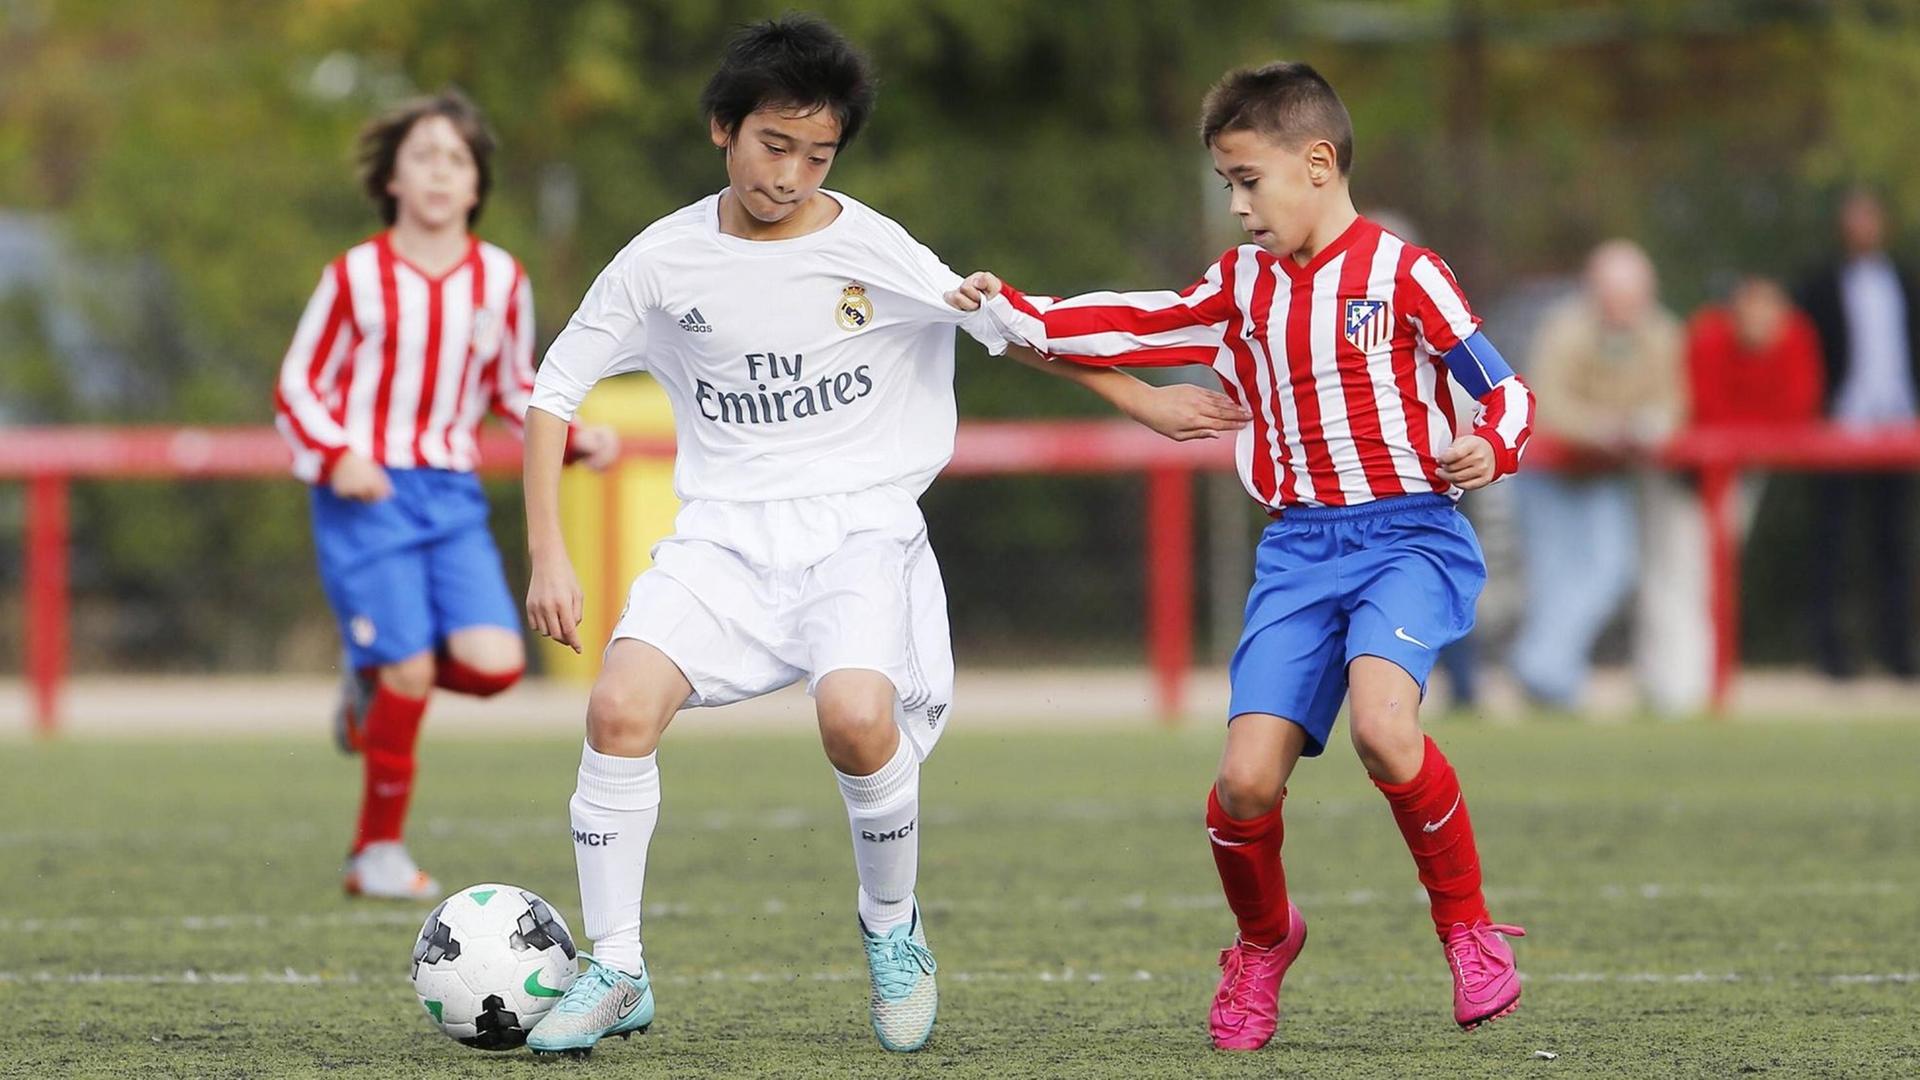 Jugendspiel zwischen Atletico und Real Madird